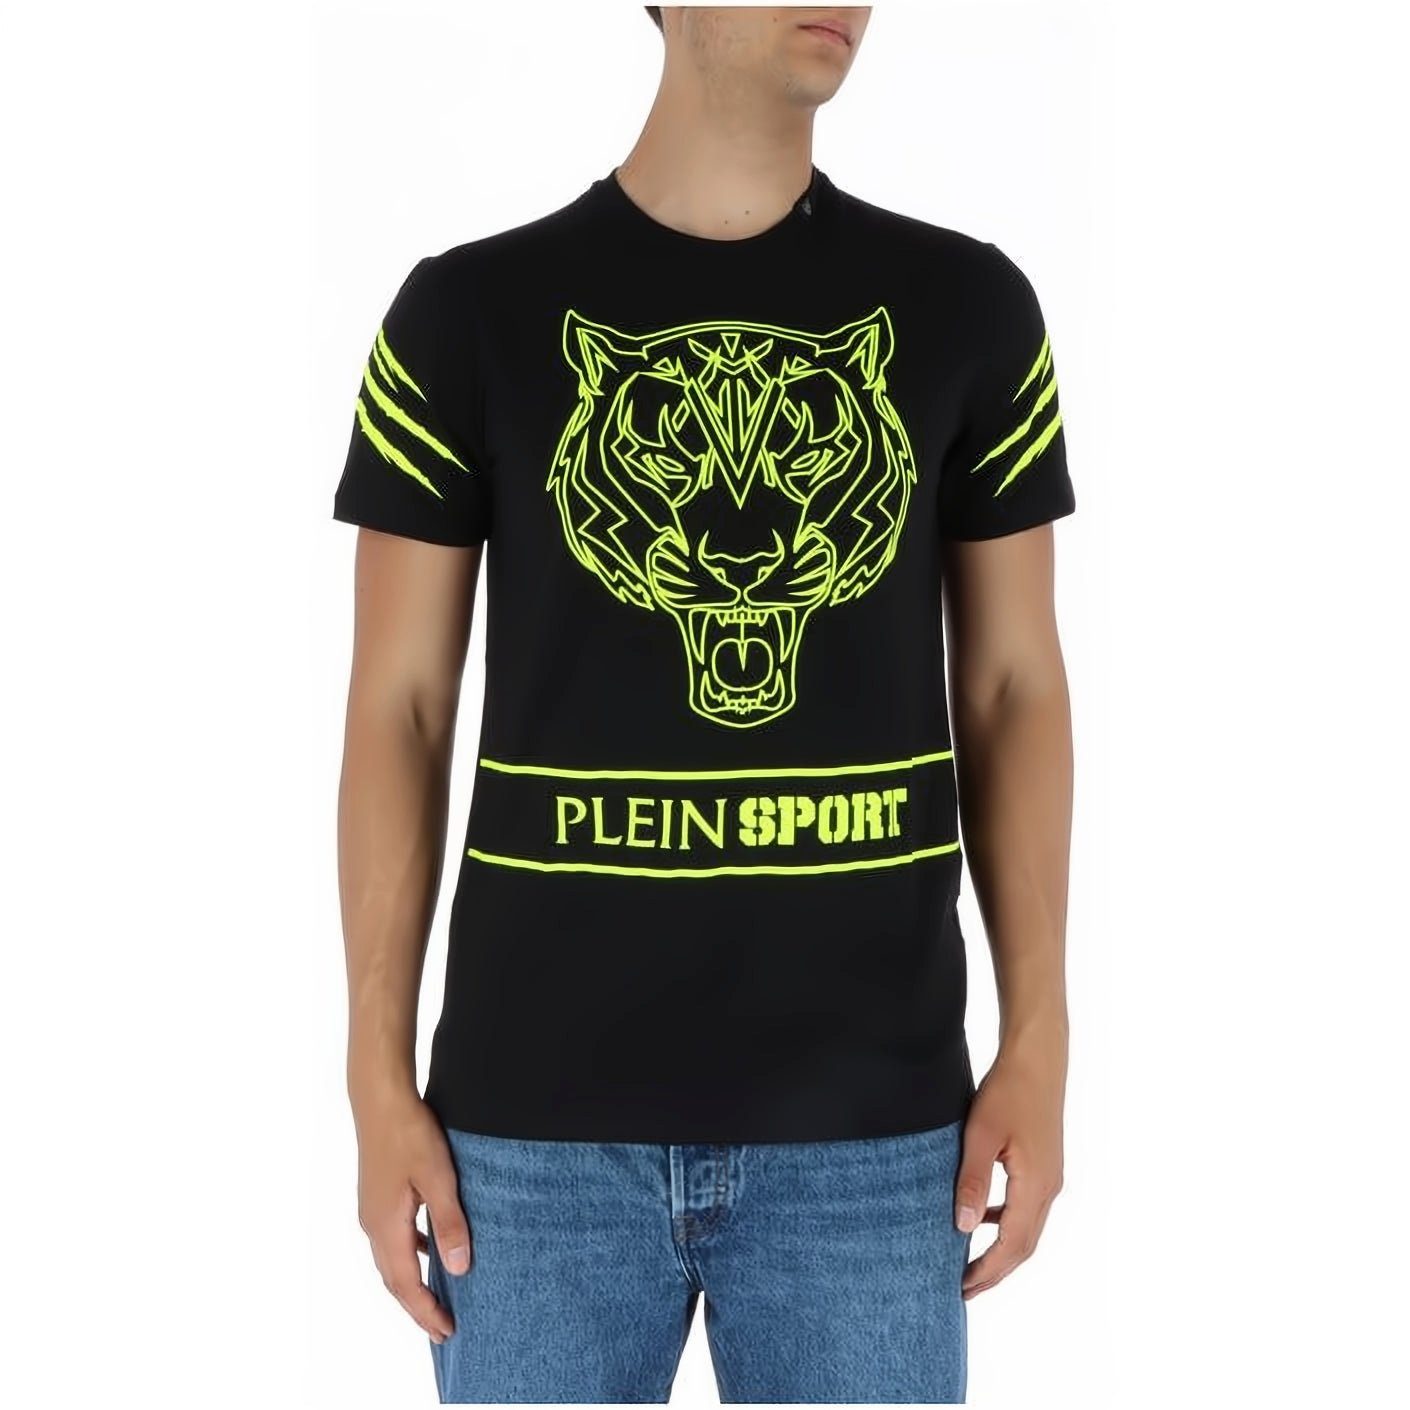 Tragekomfort, Look, Schwarz Stylischer Farbauswahl T-Shirt hoher vielfältige PLEIN NECK SPORT ROUND